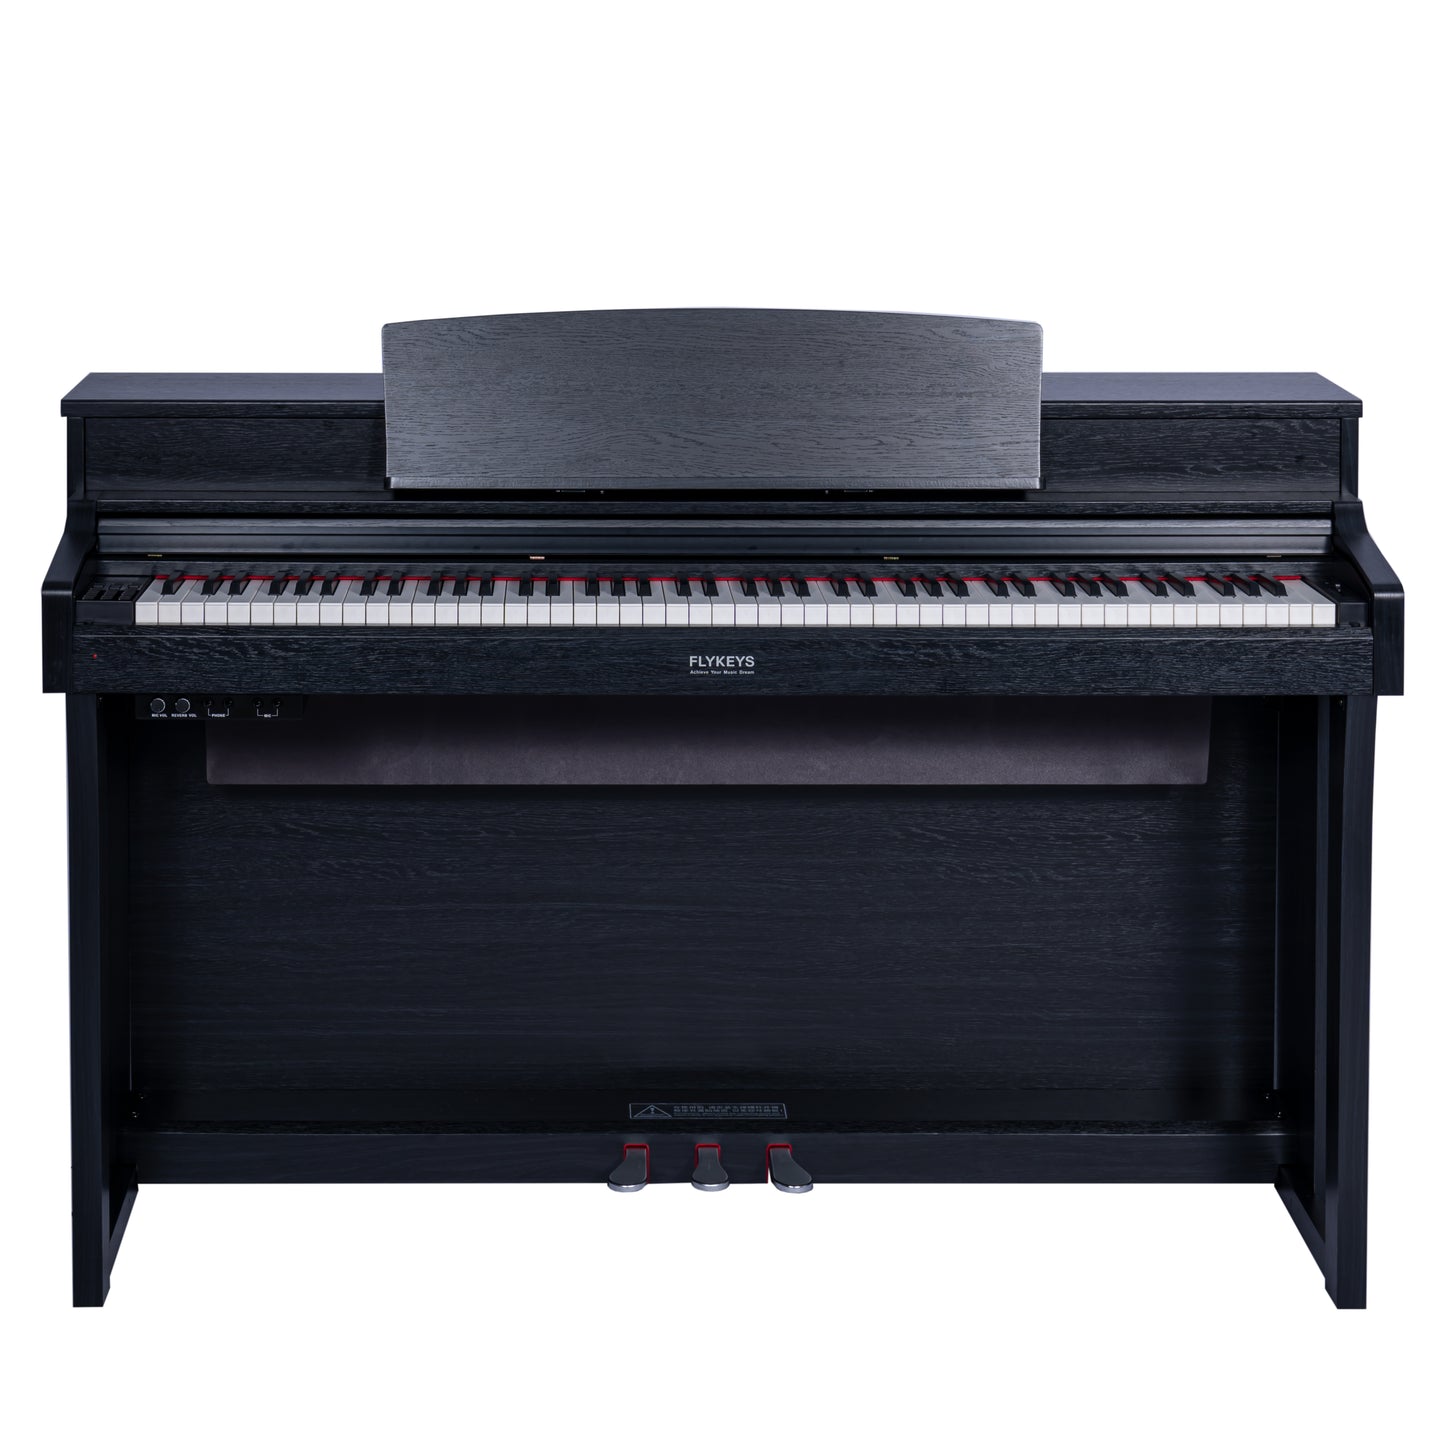 FLYKEYS FK330 電鋼琴 2023 Q4 新上市 贈升降椅、麥克風